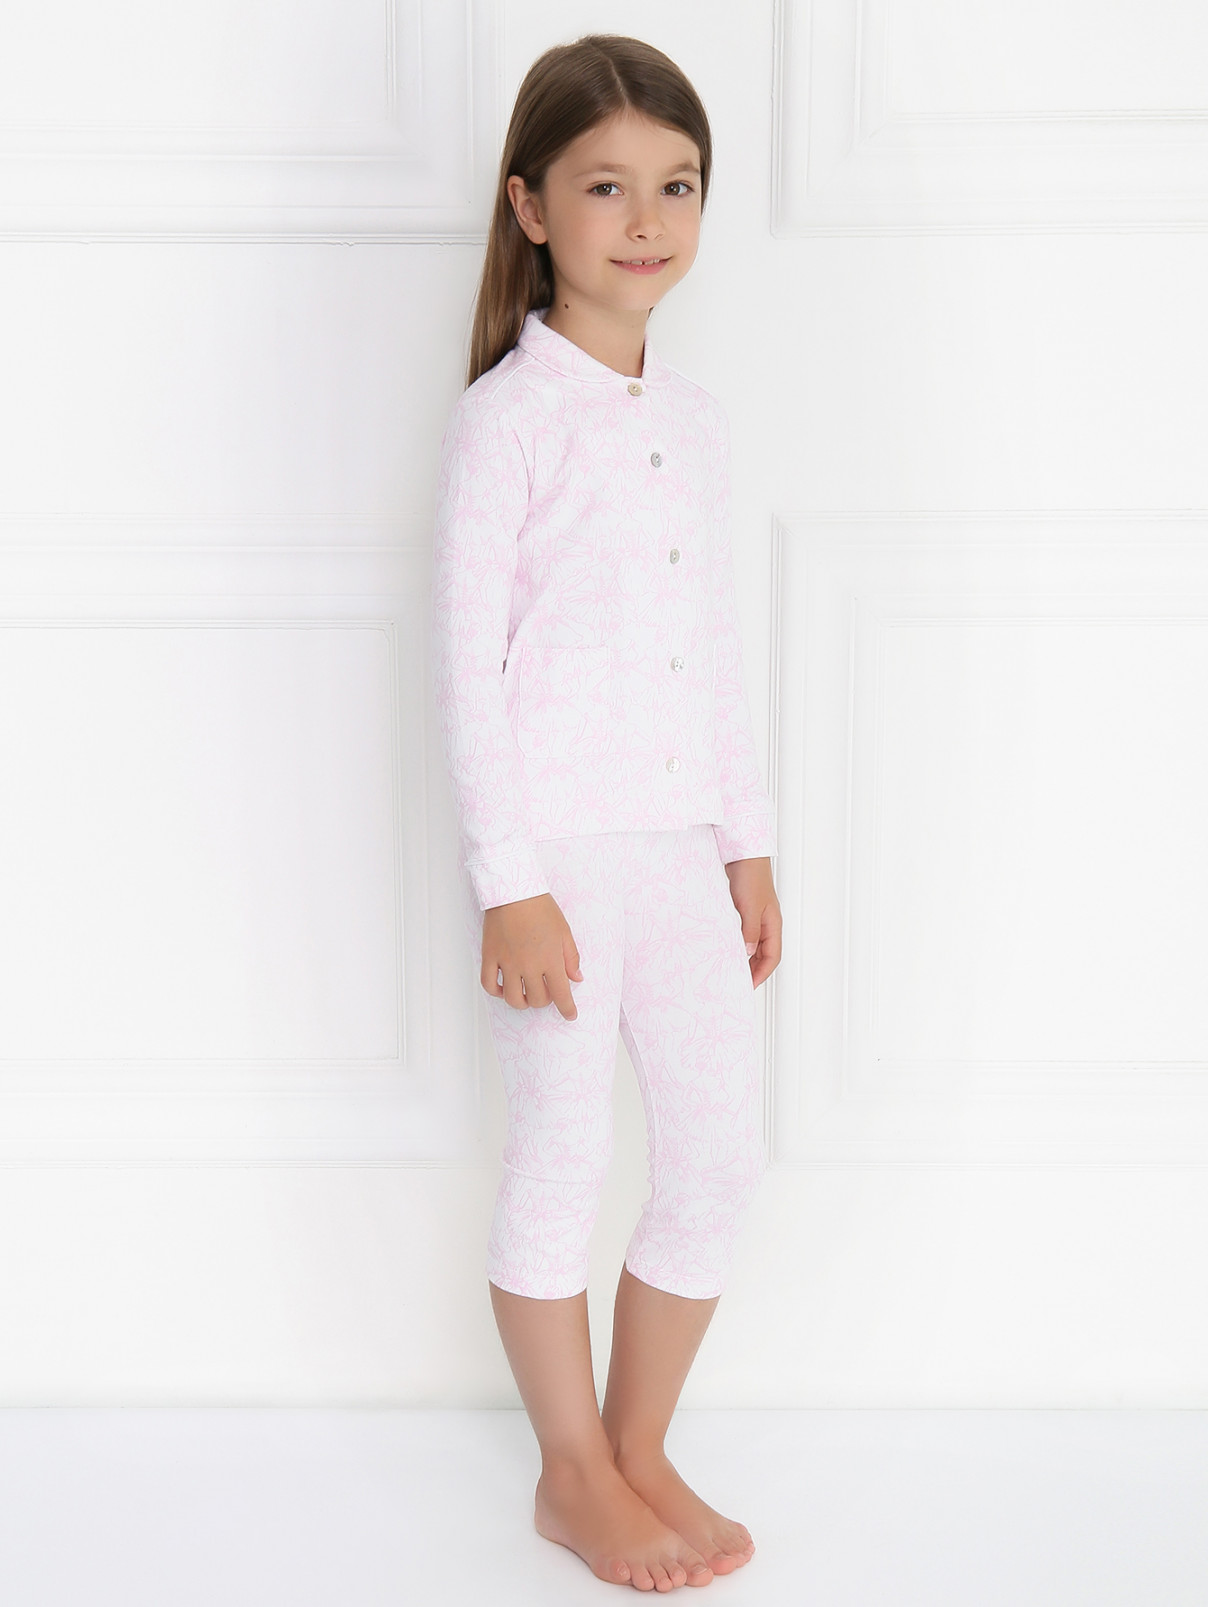 Пижама из хлопка с узором Hanssop  –  Модель Общий вид  – Цвет:  Розовый